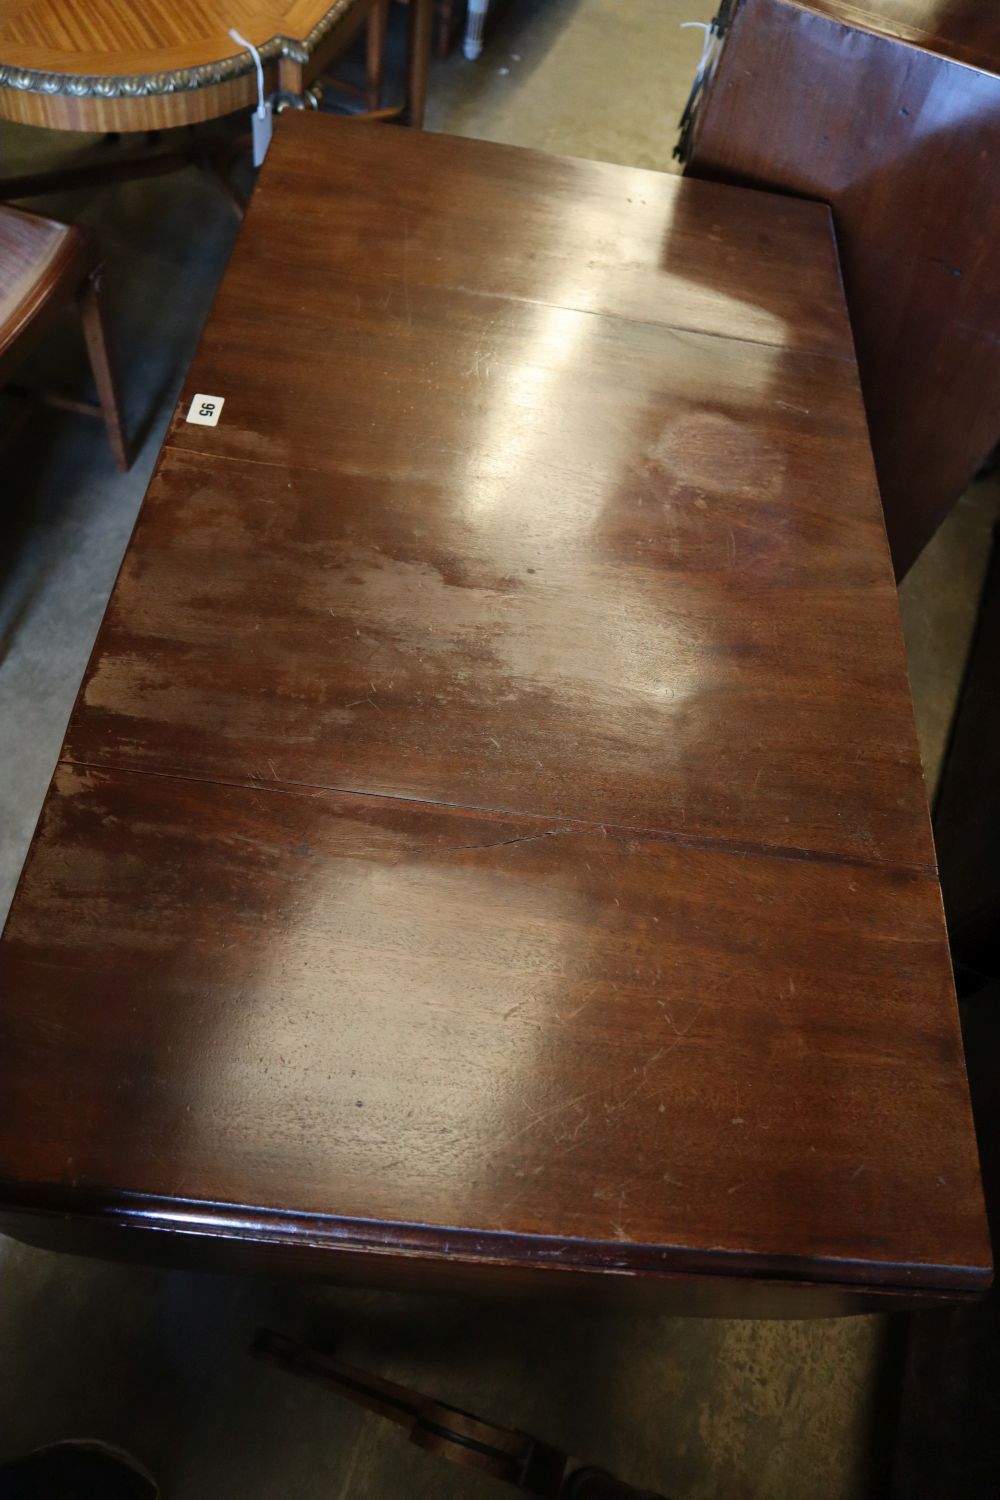 A Regency style mahogany sofa table, width 100cm